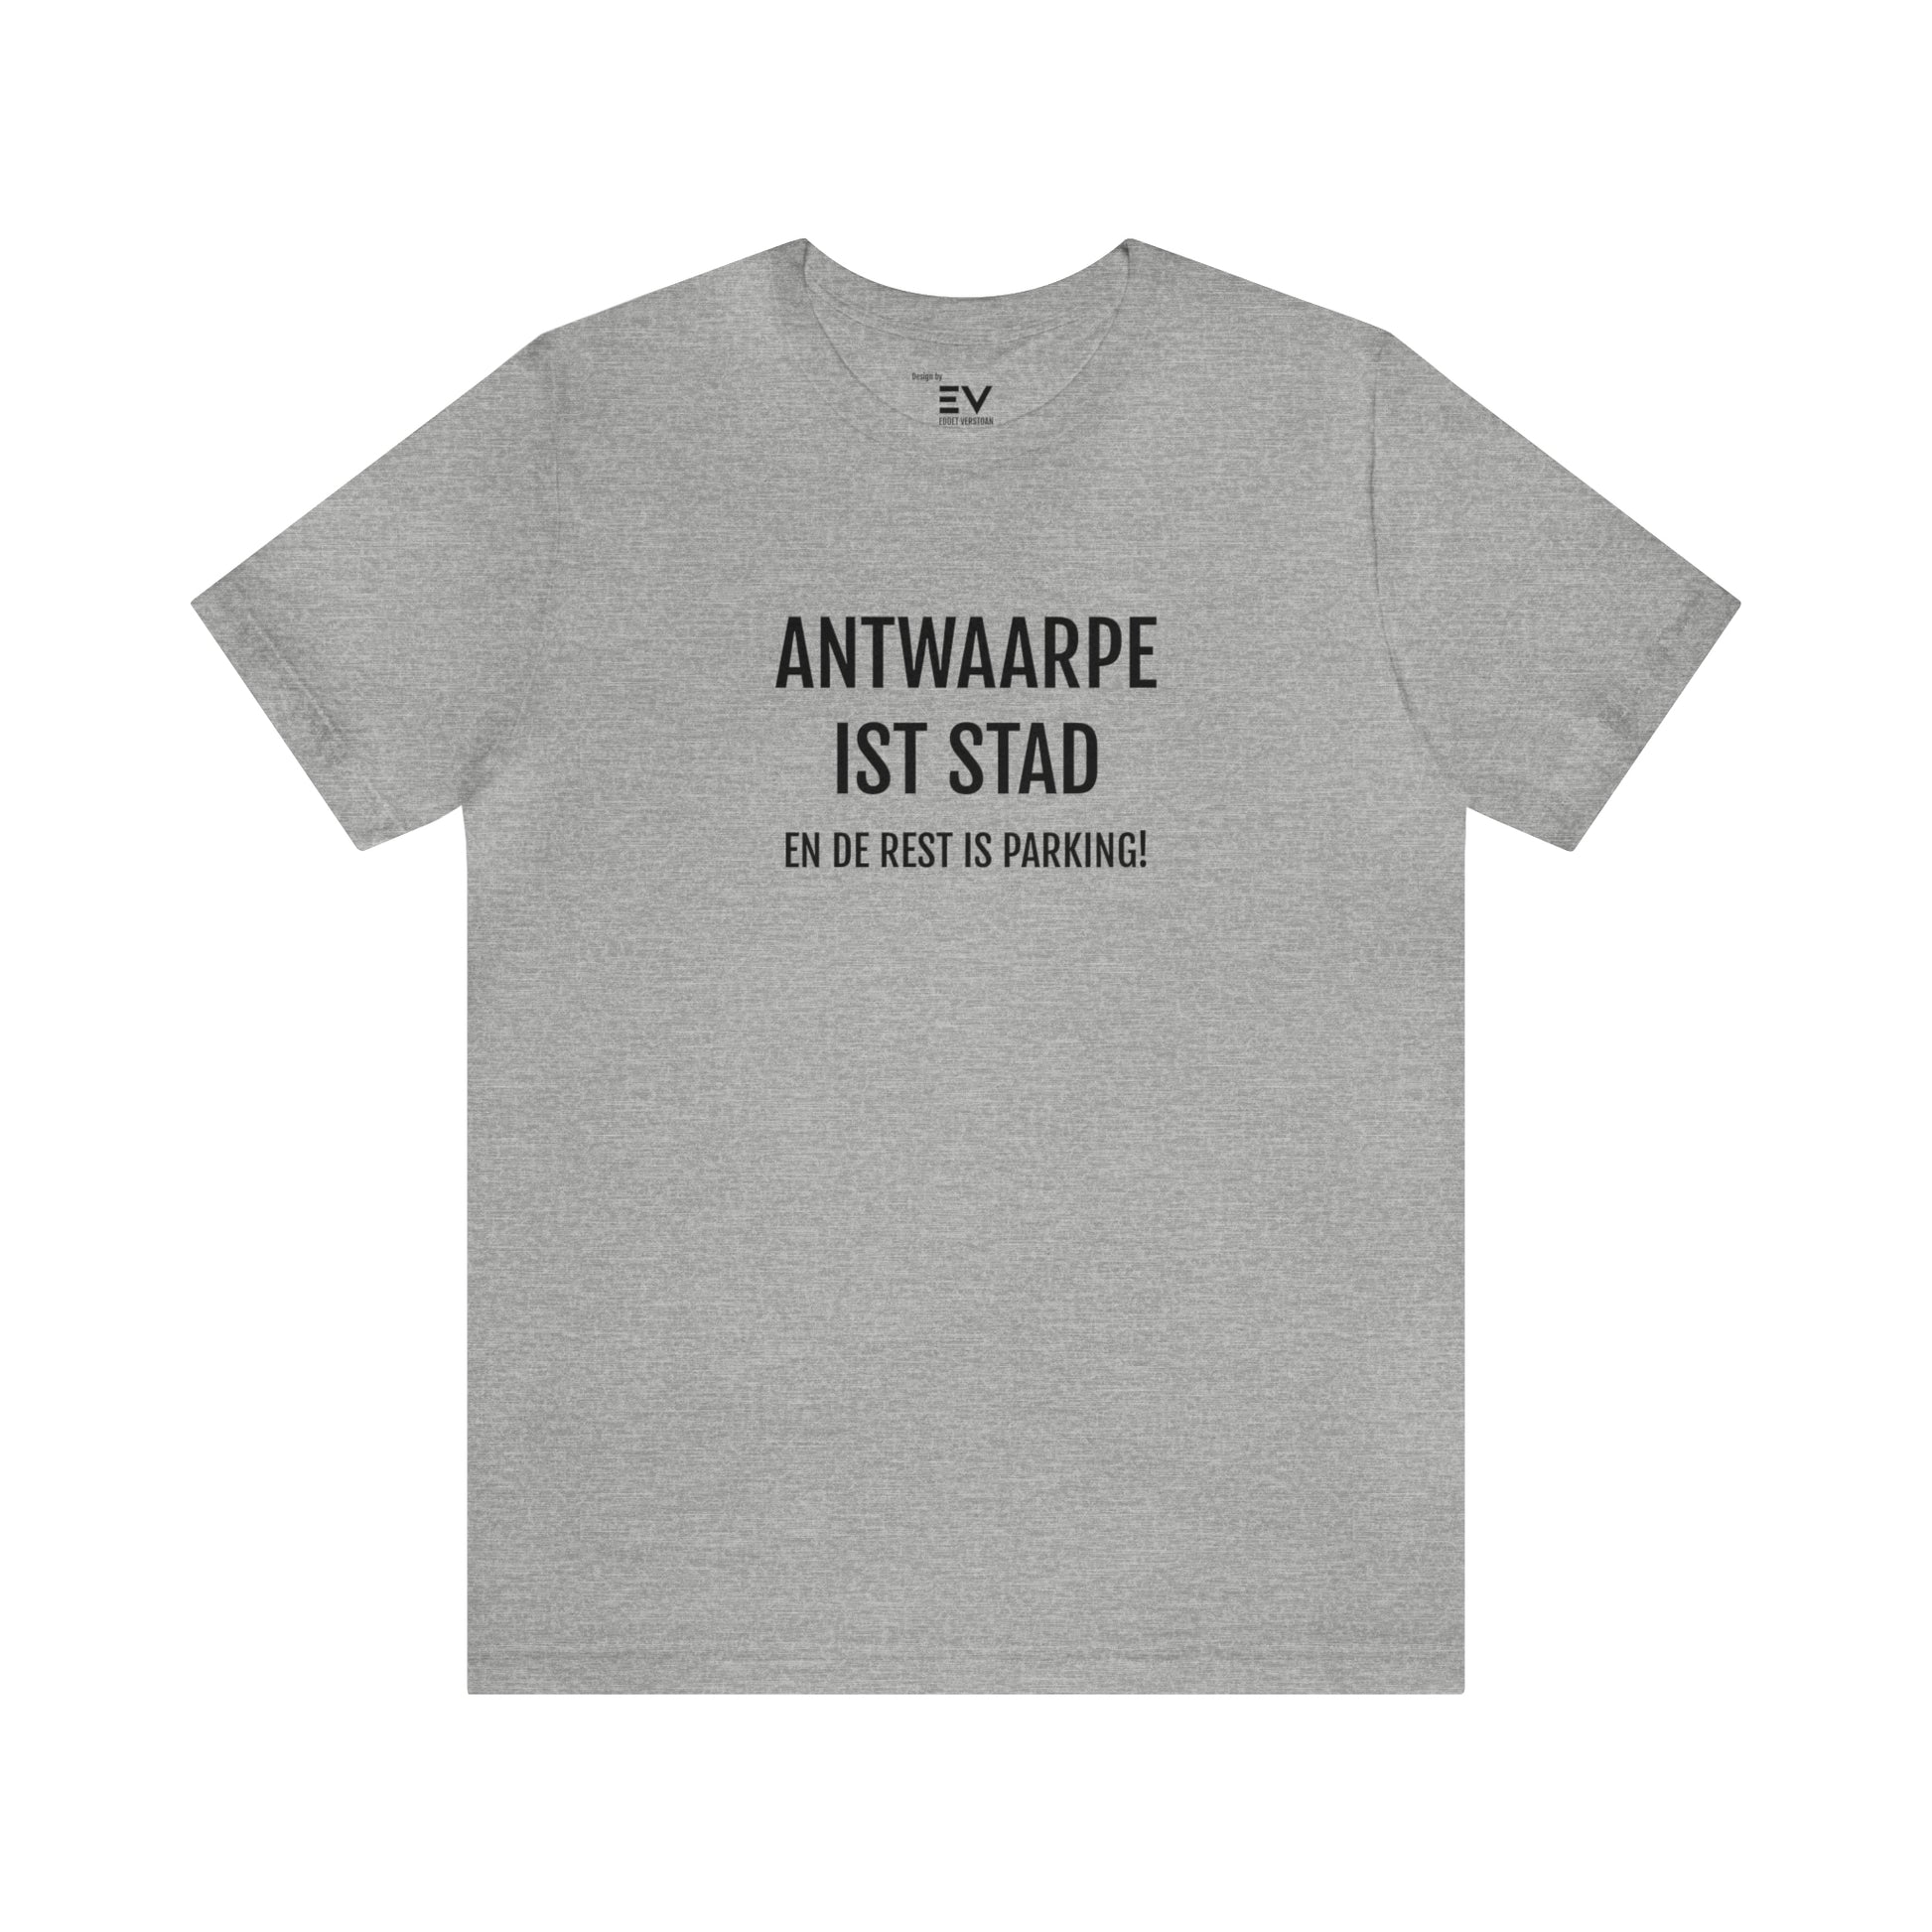 Grijs T-Shirt met 'Antwaarpe ist stad' opschrift, een ode aan Antwerpen